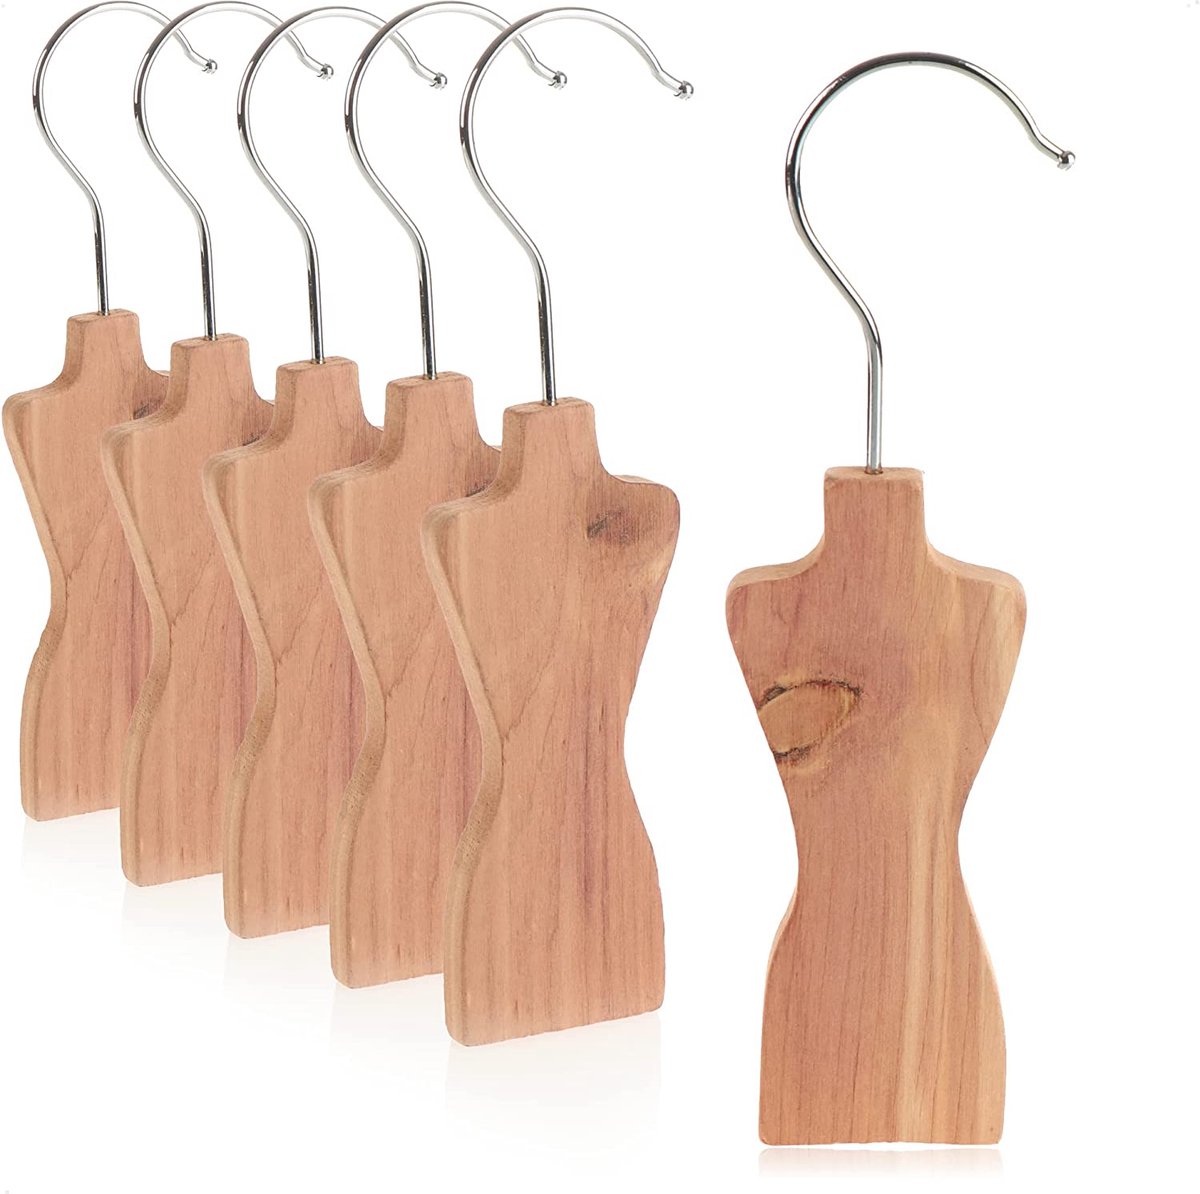 COM-FOUR® 6x mottenbescherming van cederhout, hanger voor in de kledingkast, geurige mottenwerend middel tegen kledingmotten (6 stuks - mottenstop)